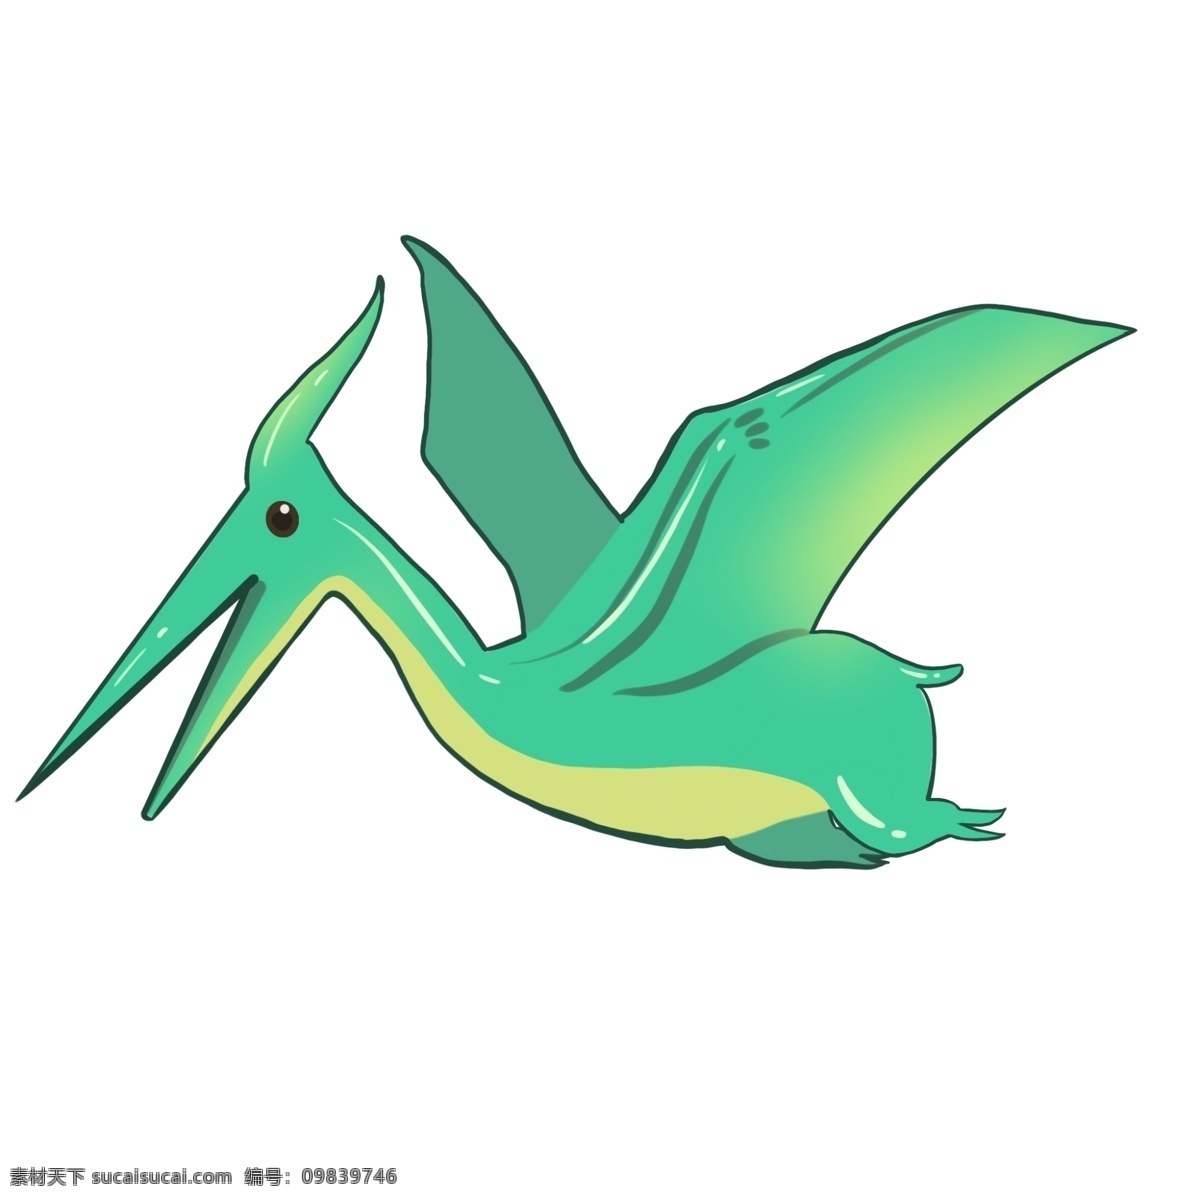 飞行 绿 翼 龙 插图 飞行恐龙 绿色恐龙 飞行的绿翼龙 恐龙 会飞的恐龙 可爱的绿翼龙 绿翼龙